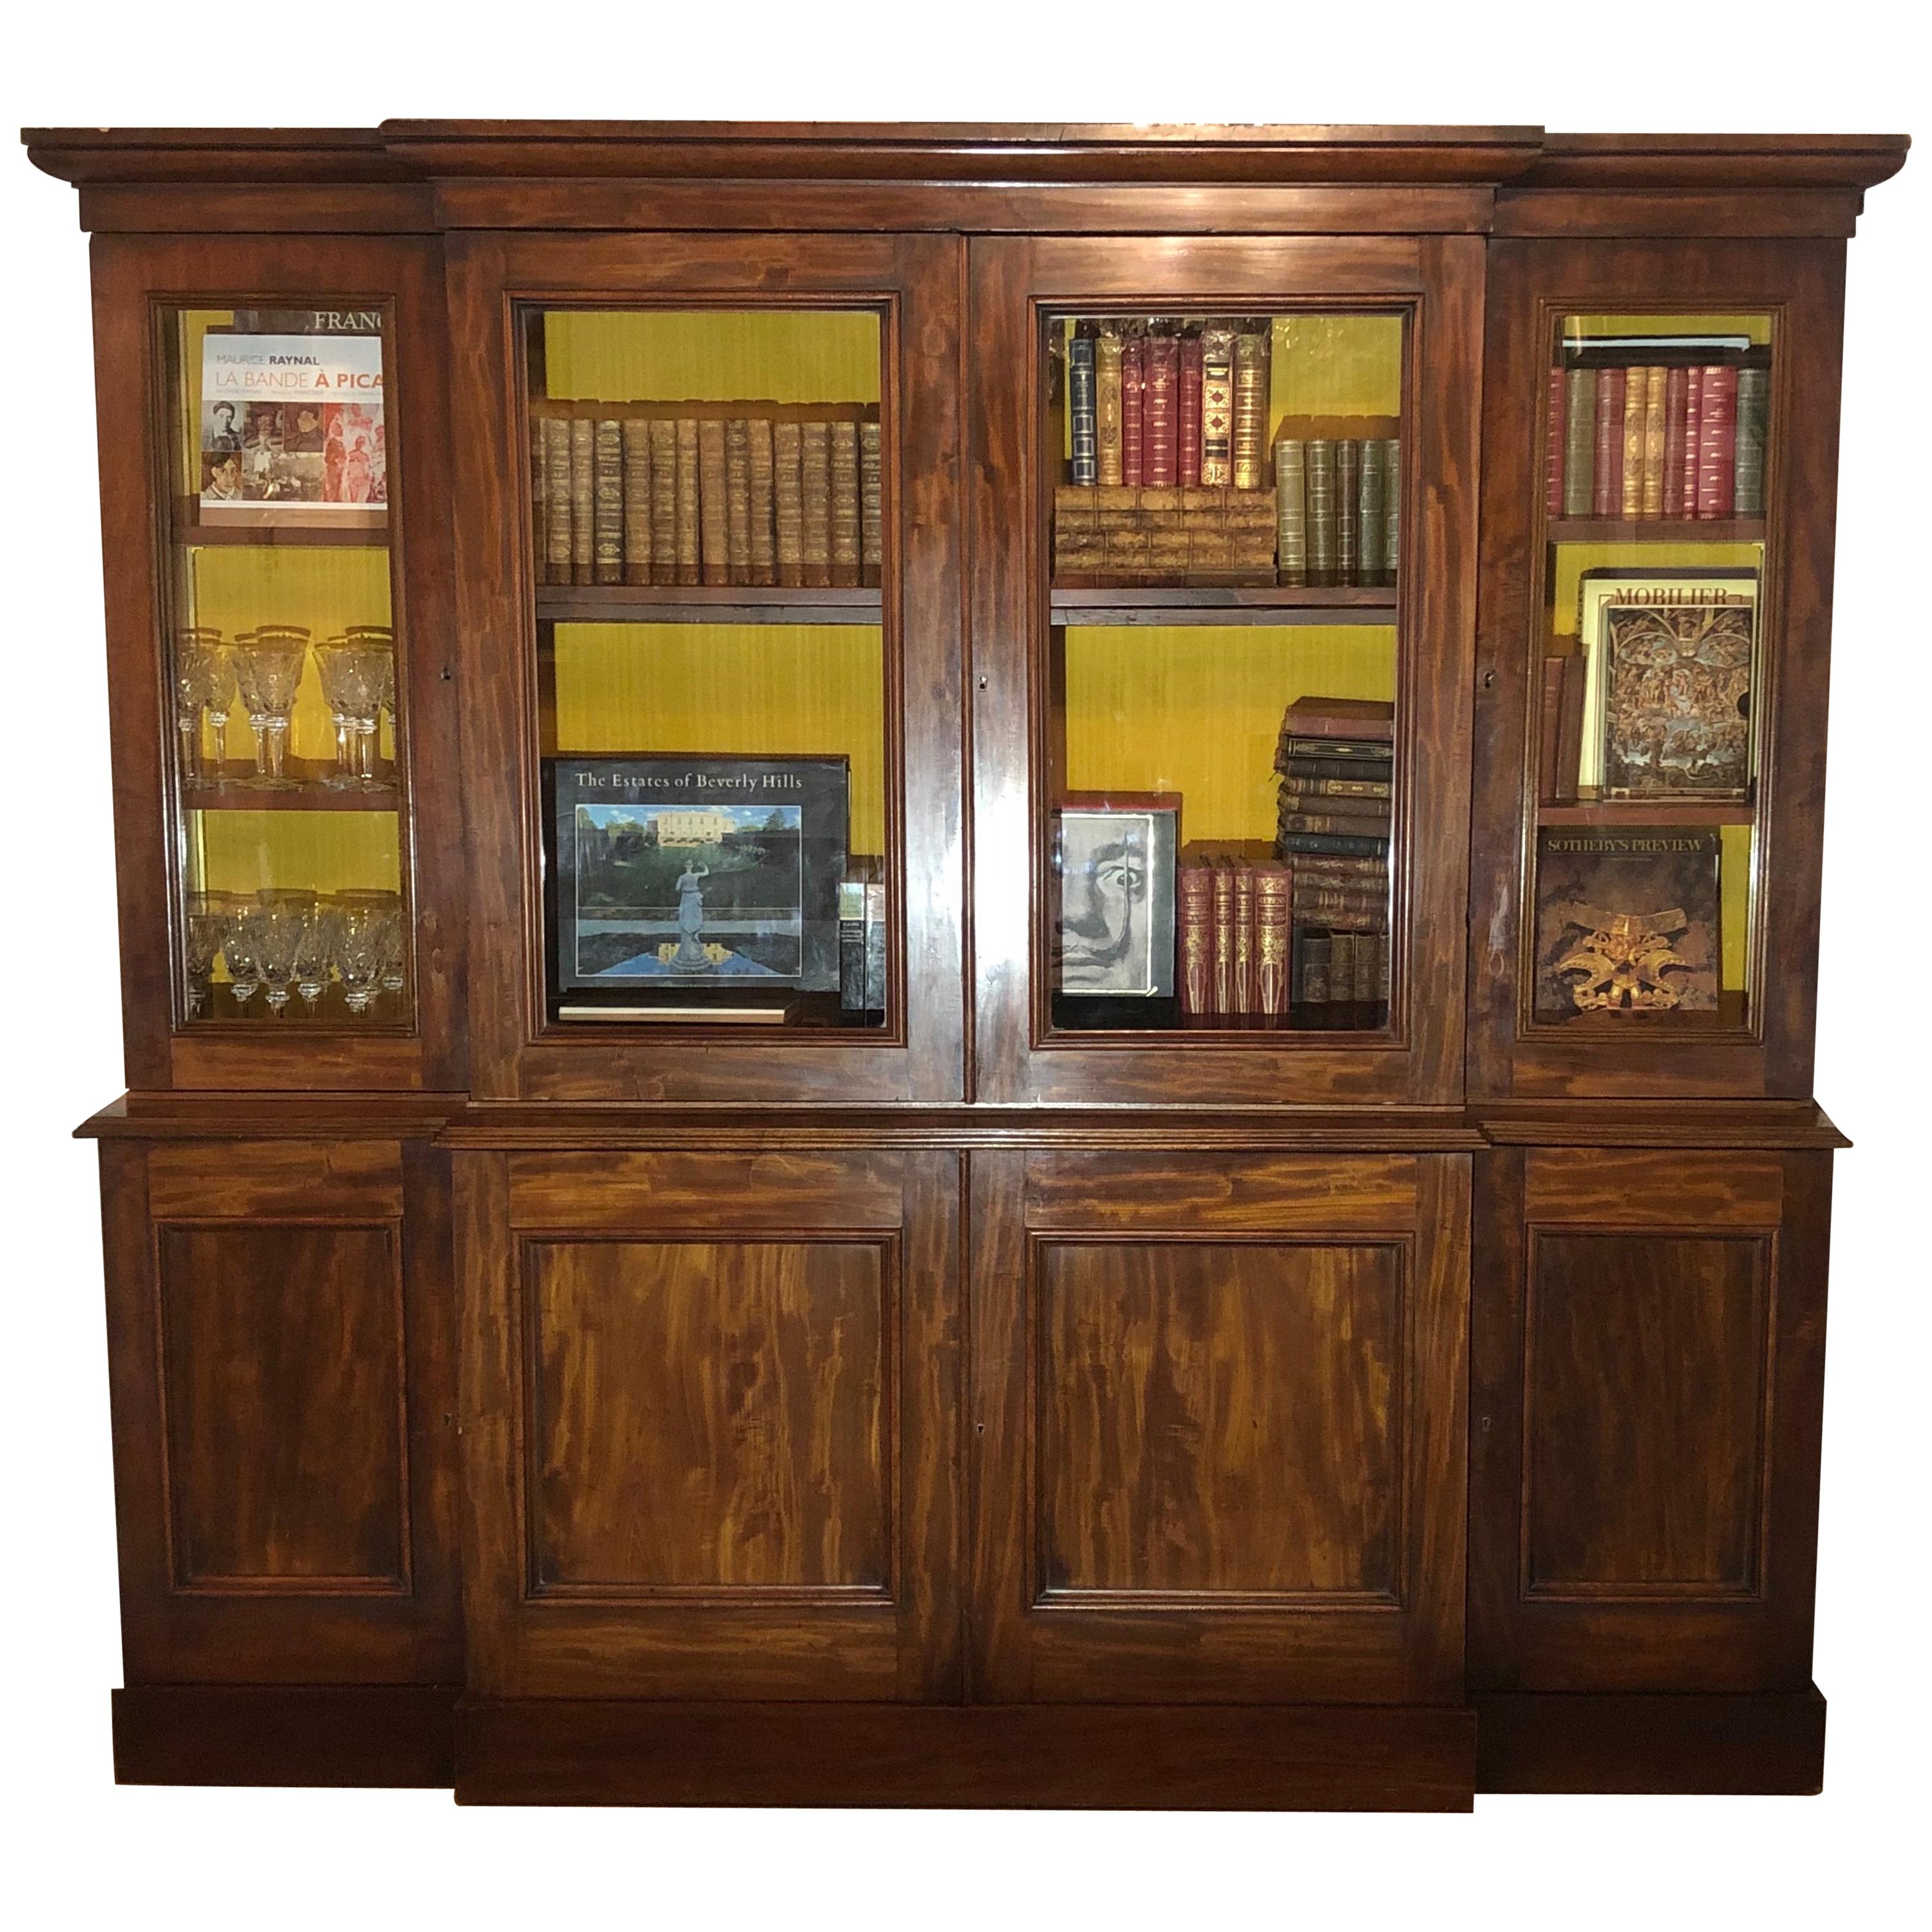 Englisches viktorianisches Mahagoni-Bücherregal aus dem 19. Jahrhundert